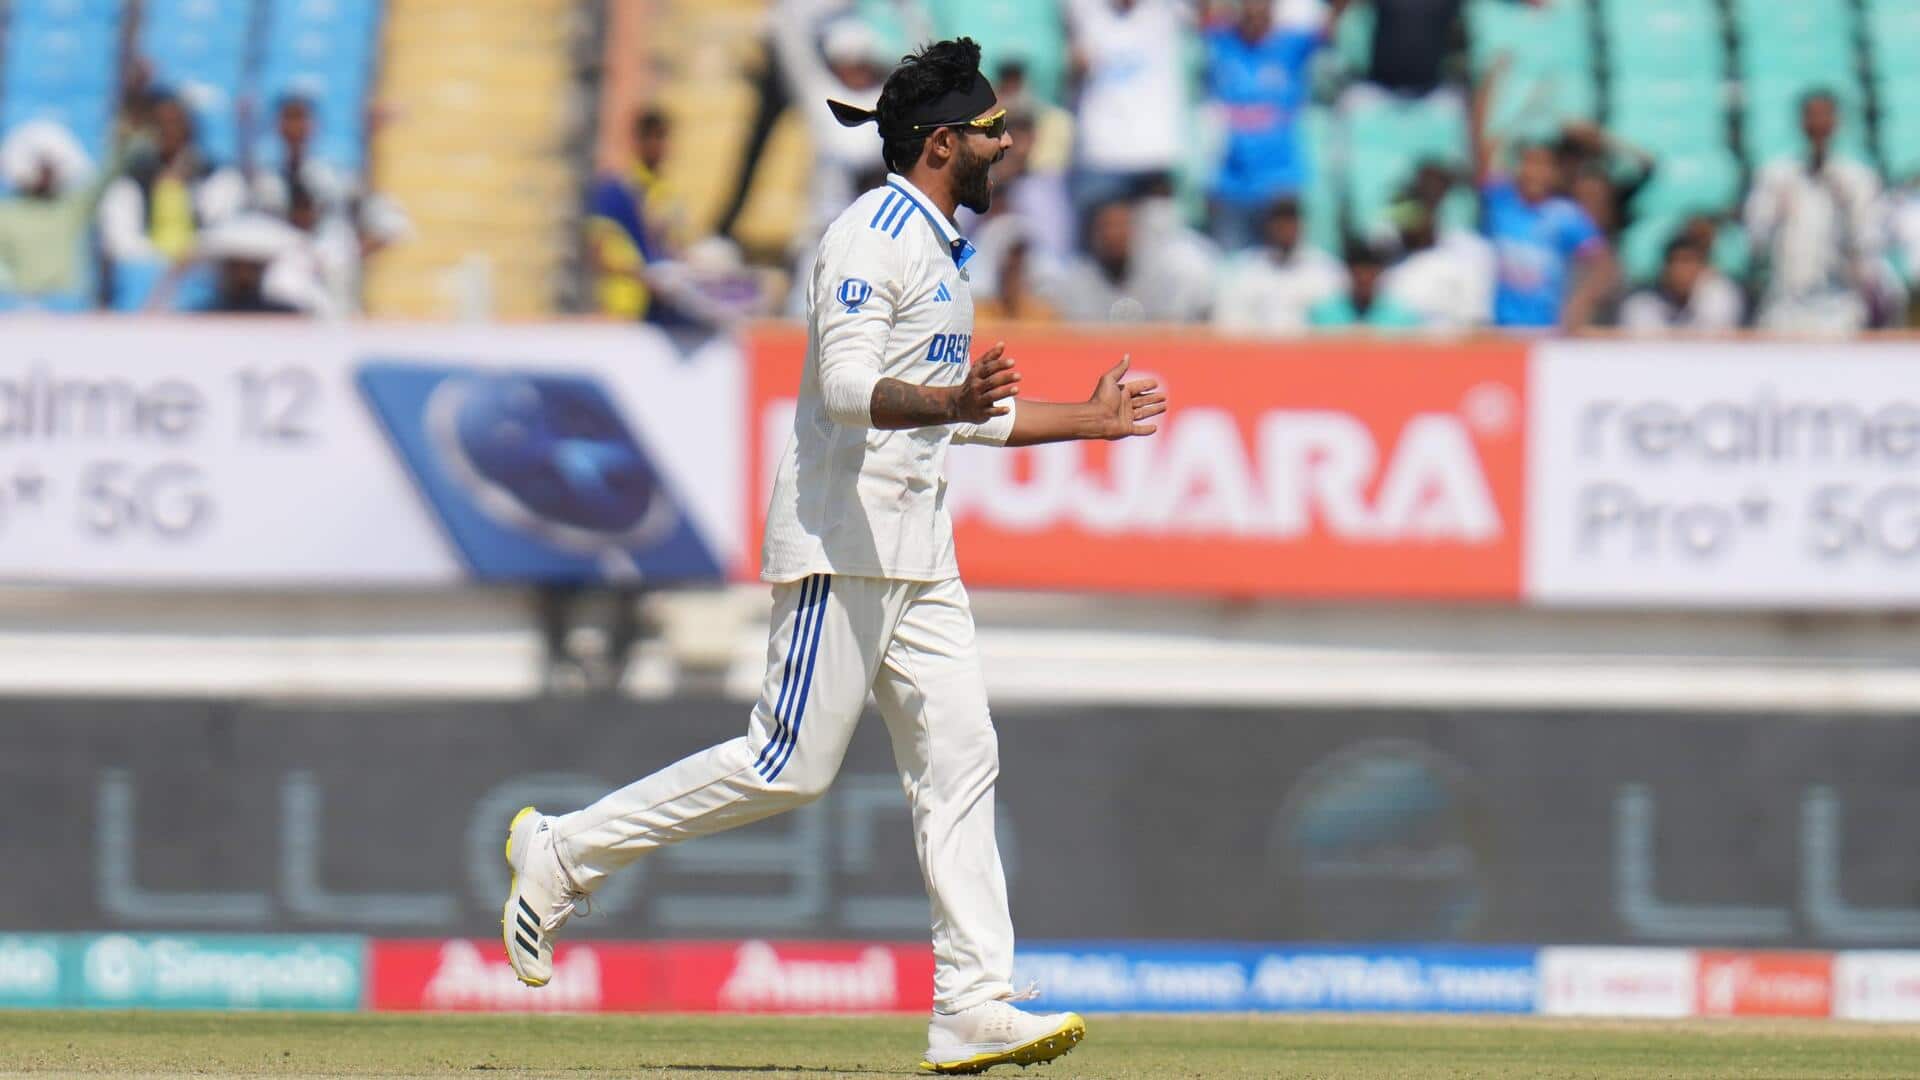 तीसरा टेस्ट: रविंद्र जडेजा ने इंग्लैंड के खिलाफ दूसरी बार चटकाए 5 विकेट, ये बनाए रिकॉर्ड्स